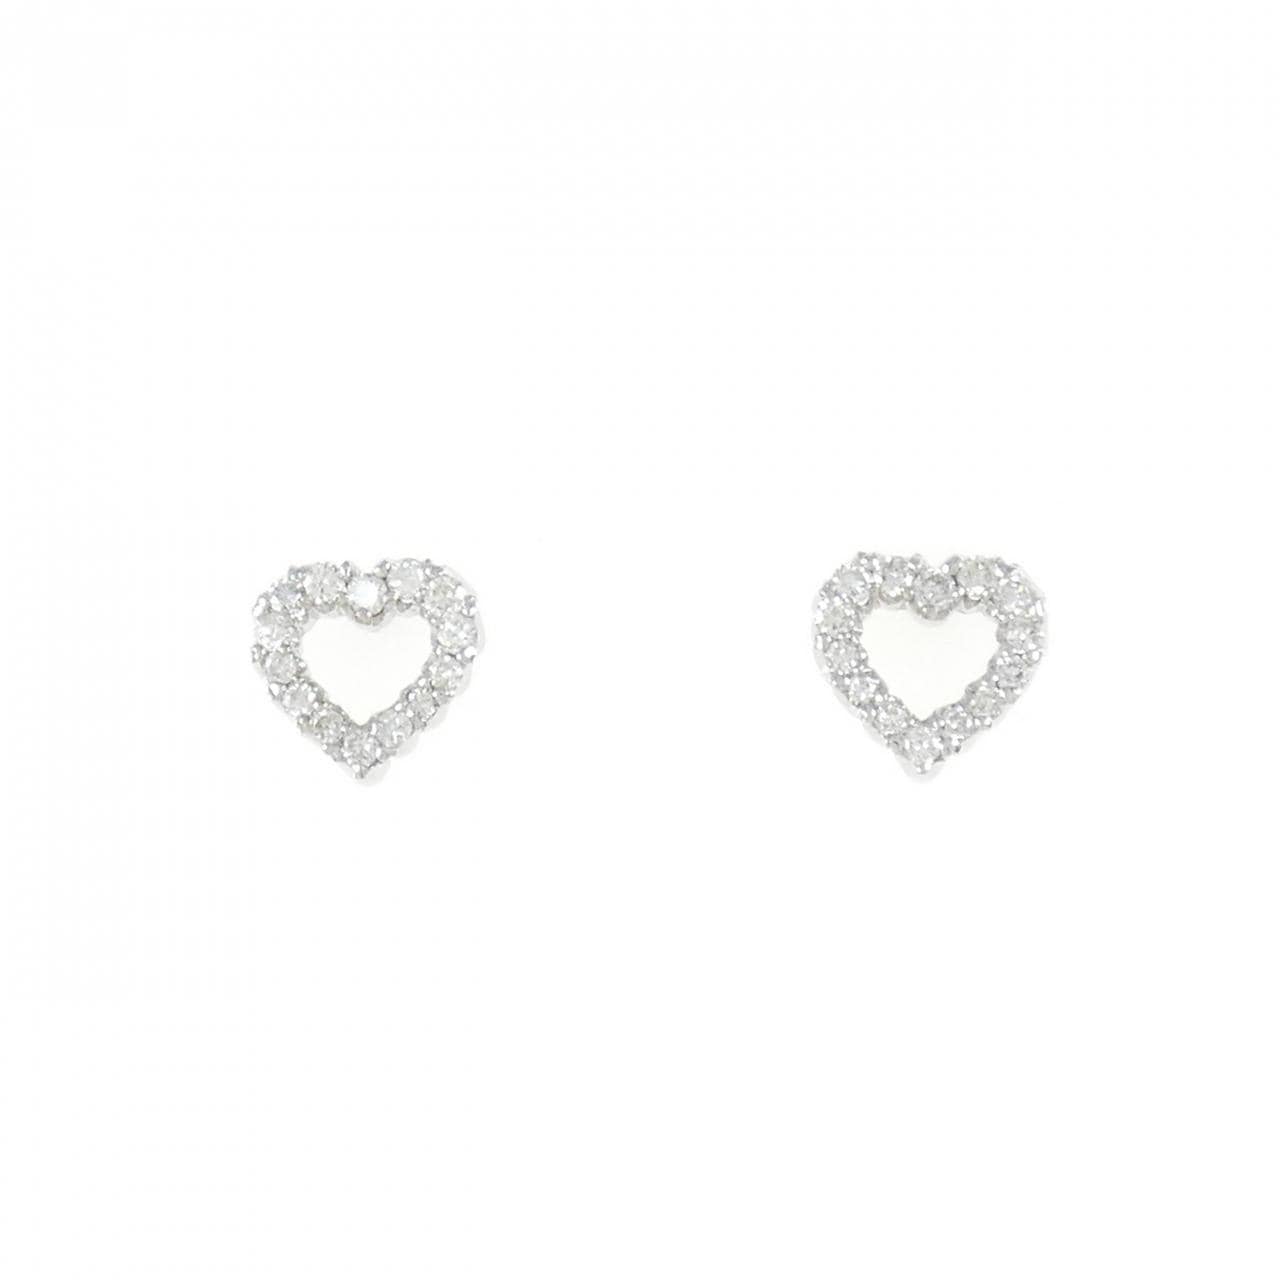 K18WG heart Diamond earrings 0.34CT